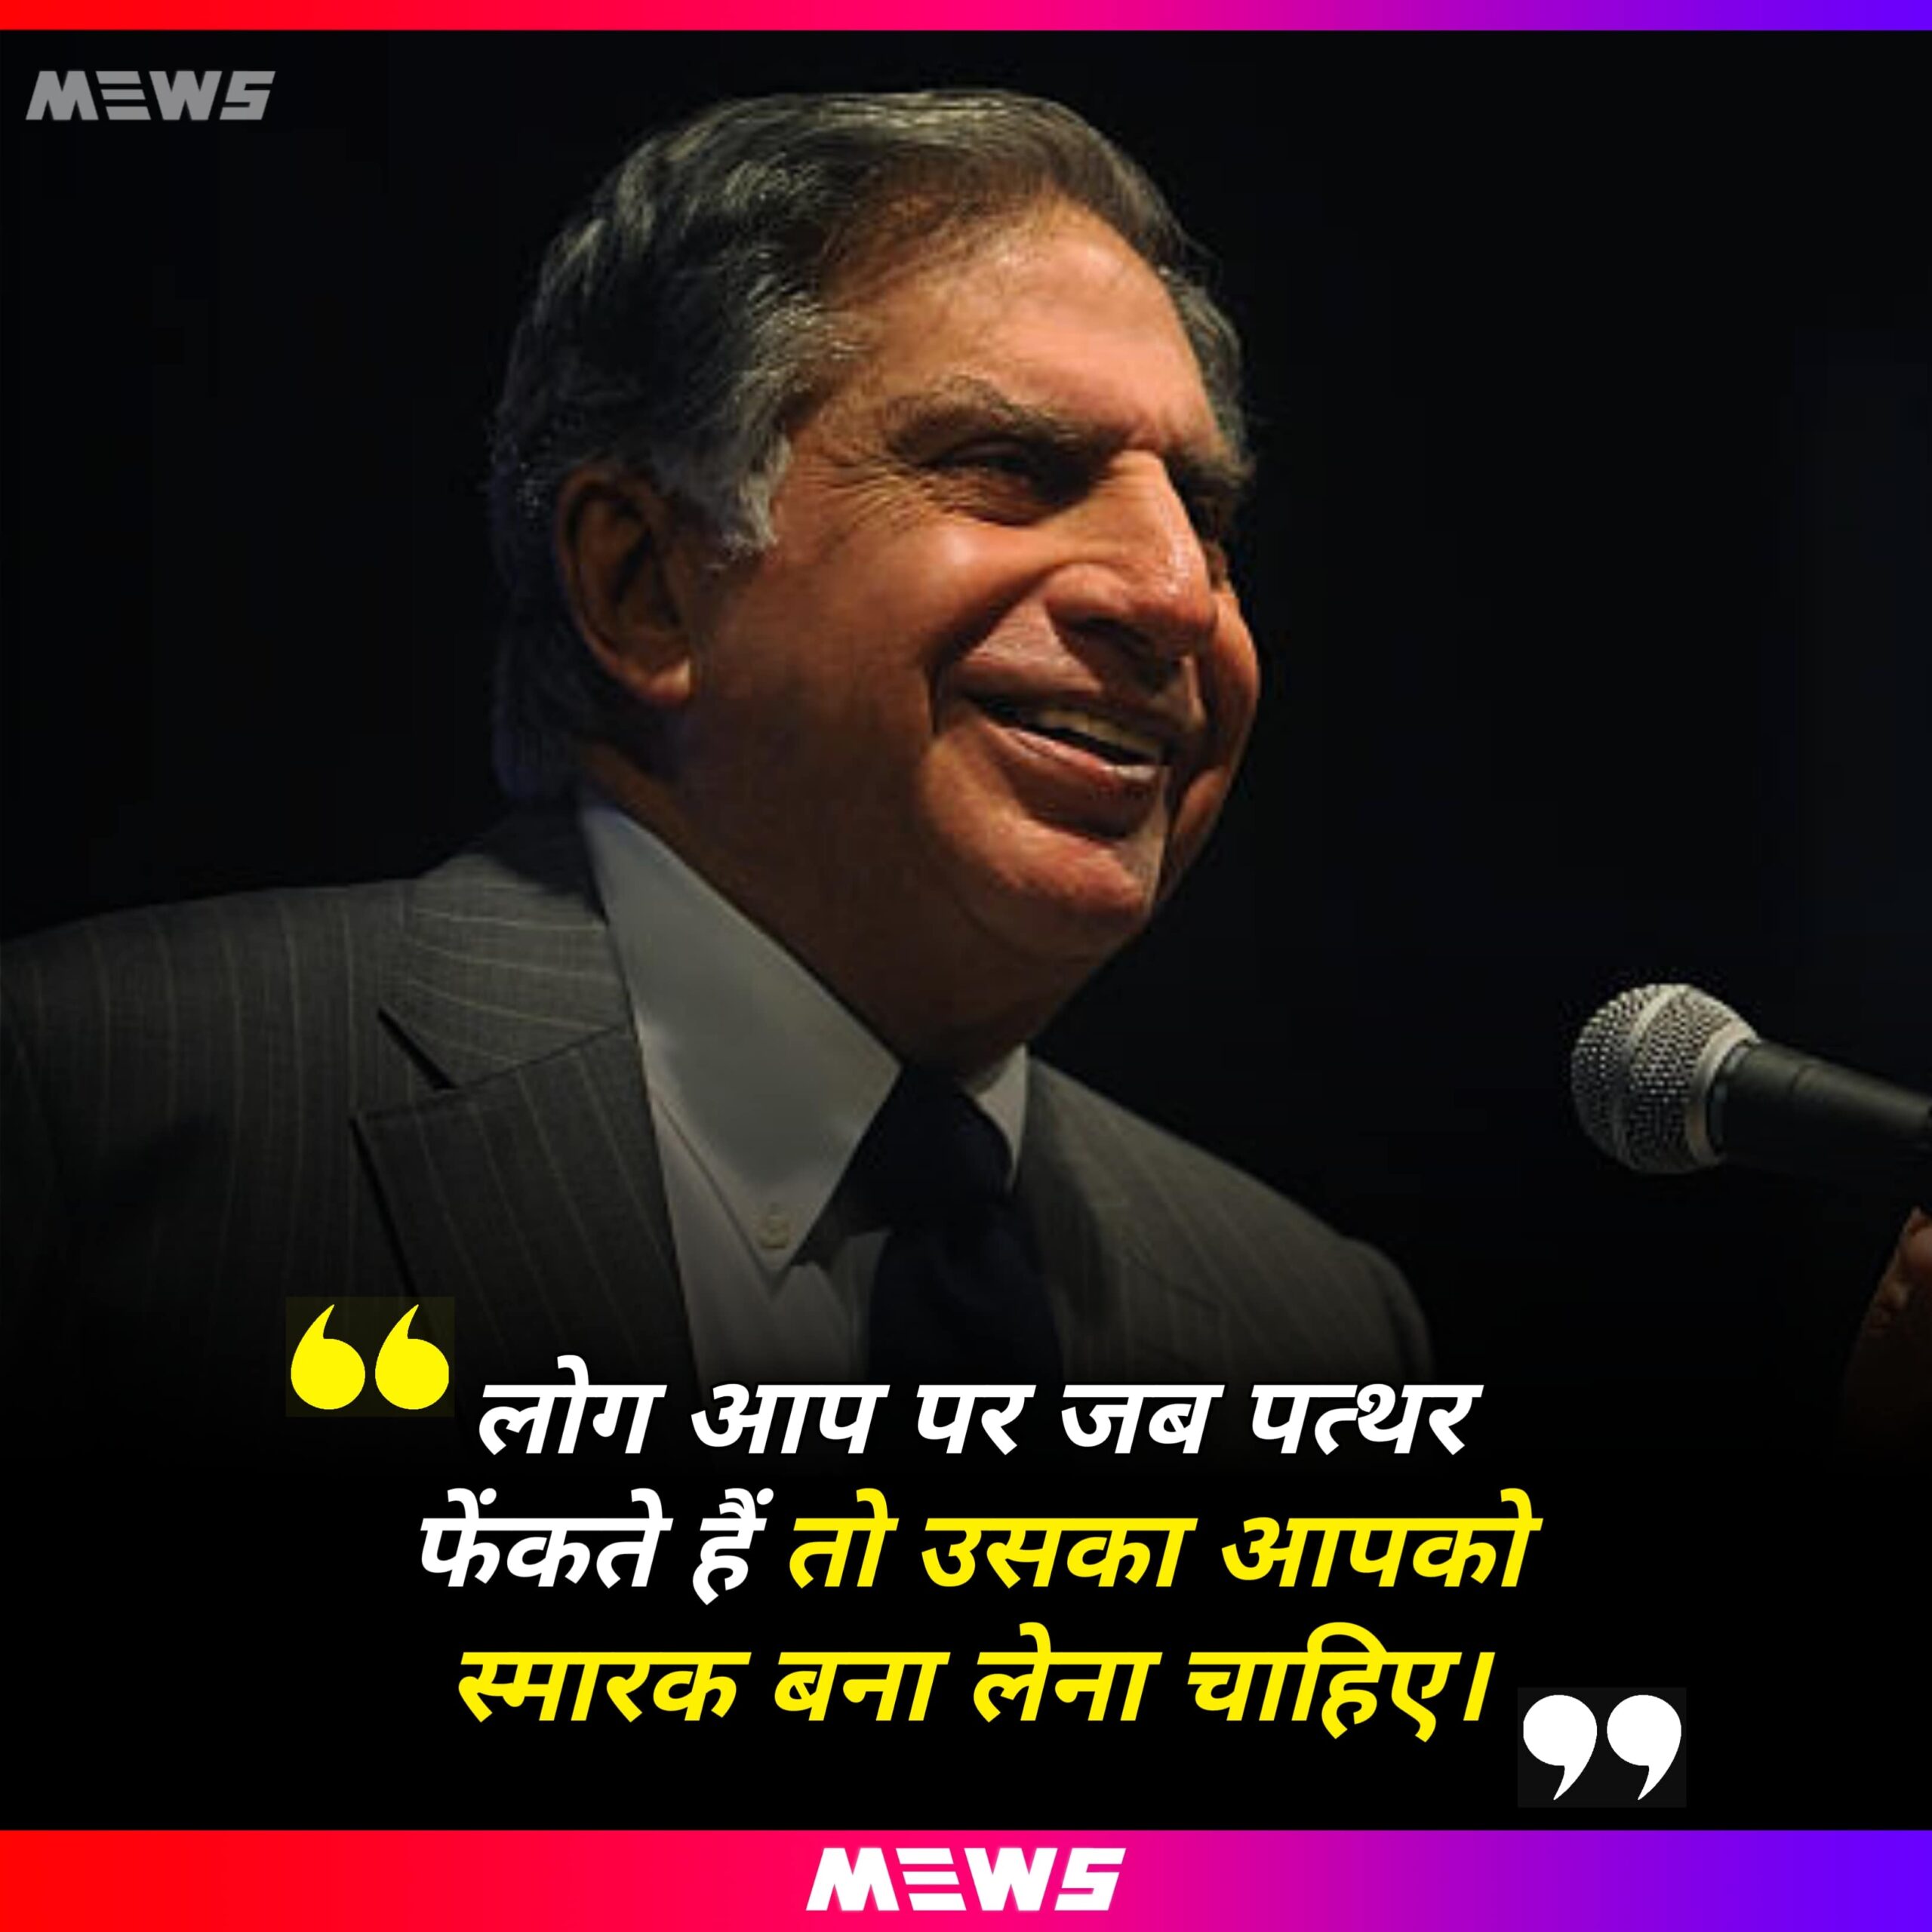 Quotes by Ratan Tata Hindi